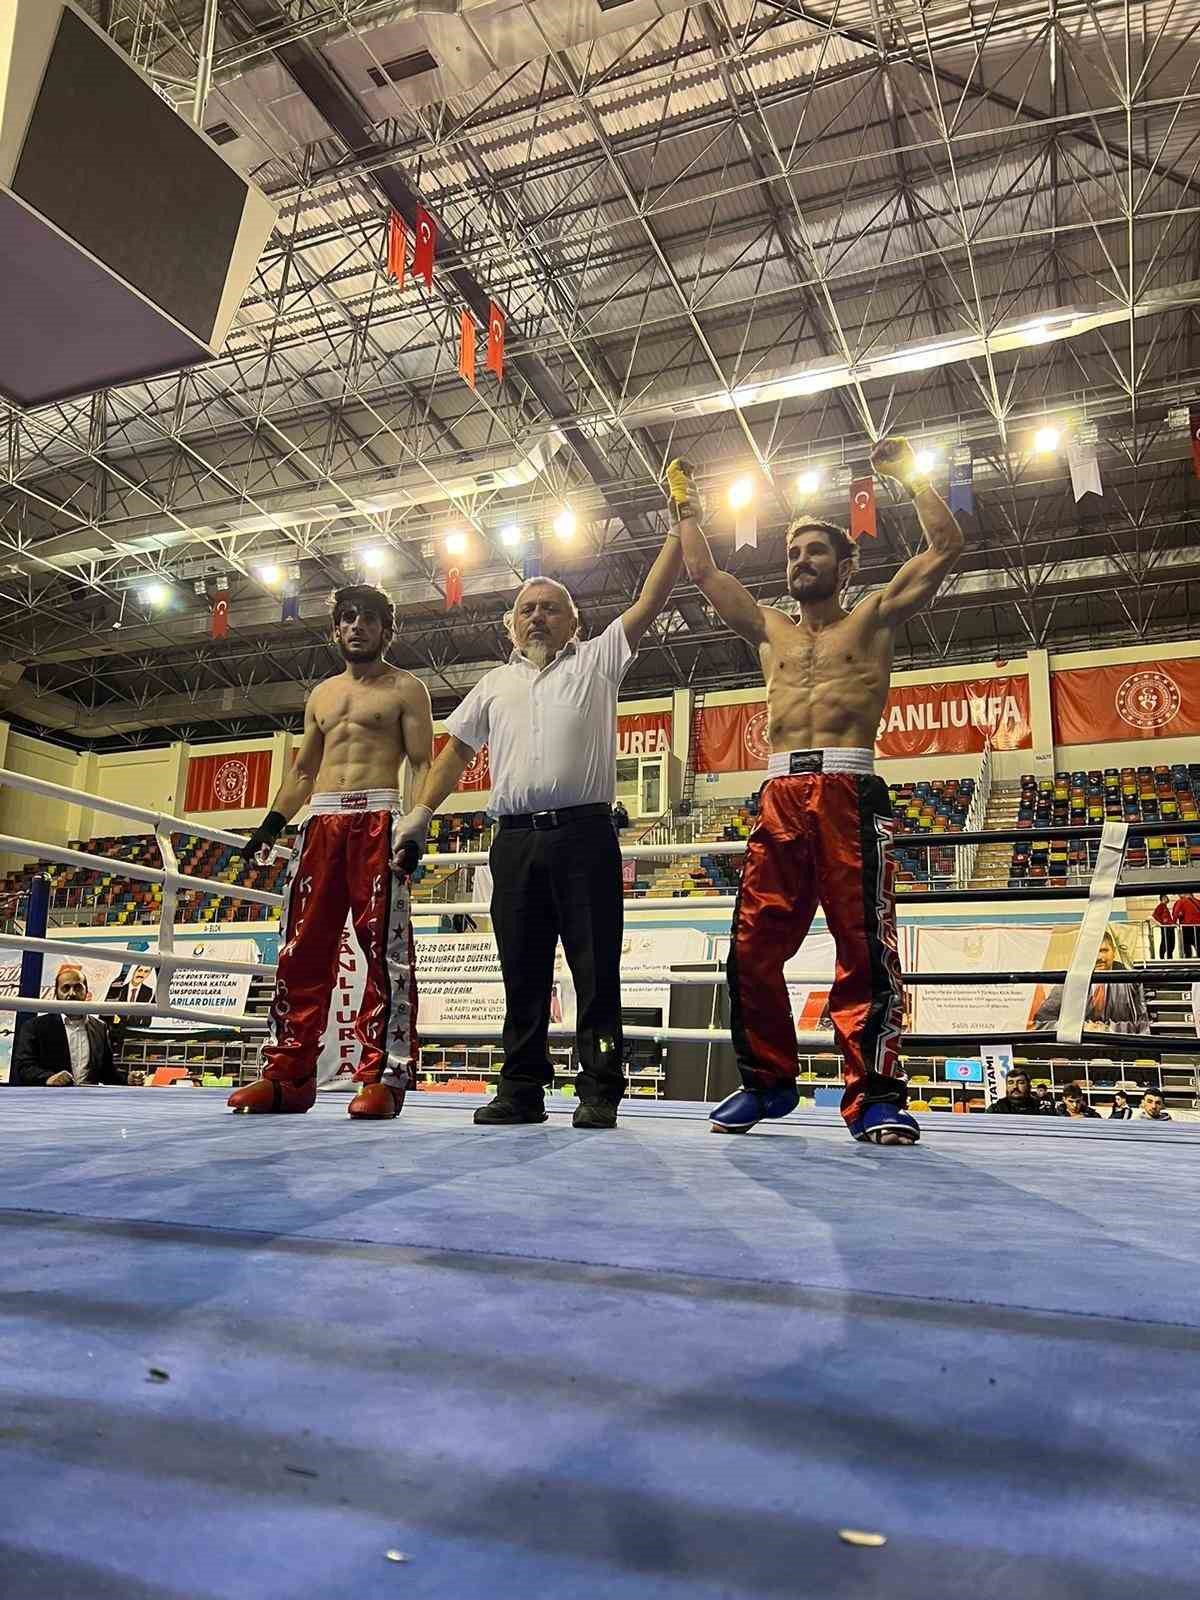 Emre Karaca Türkiye Açık Kick Boks Turnuvası’na damgasını vurdu